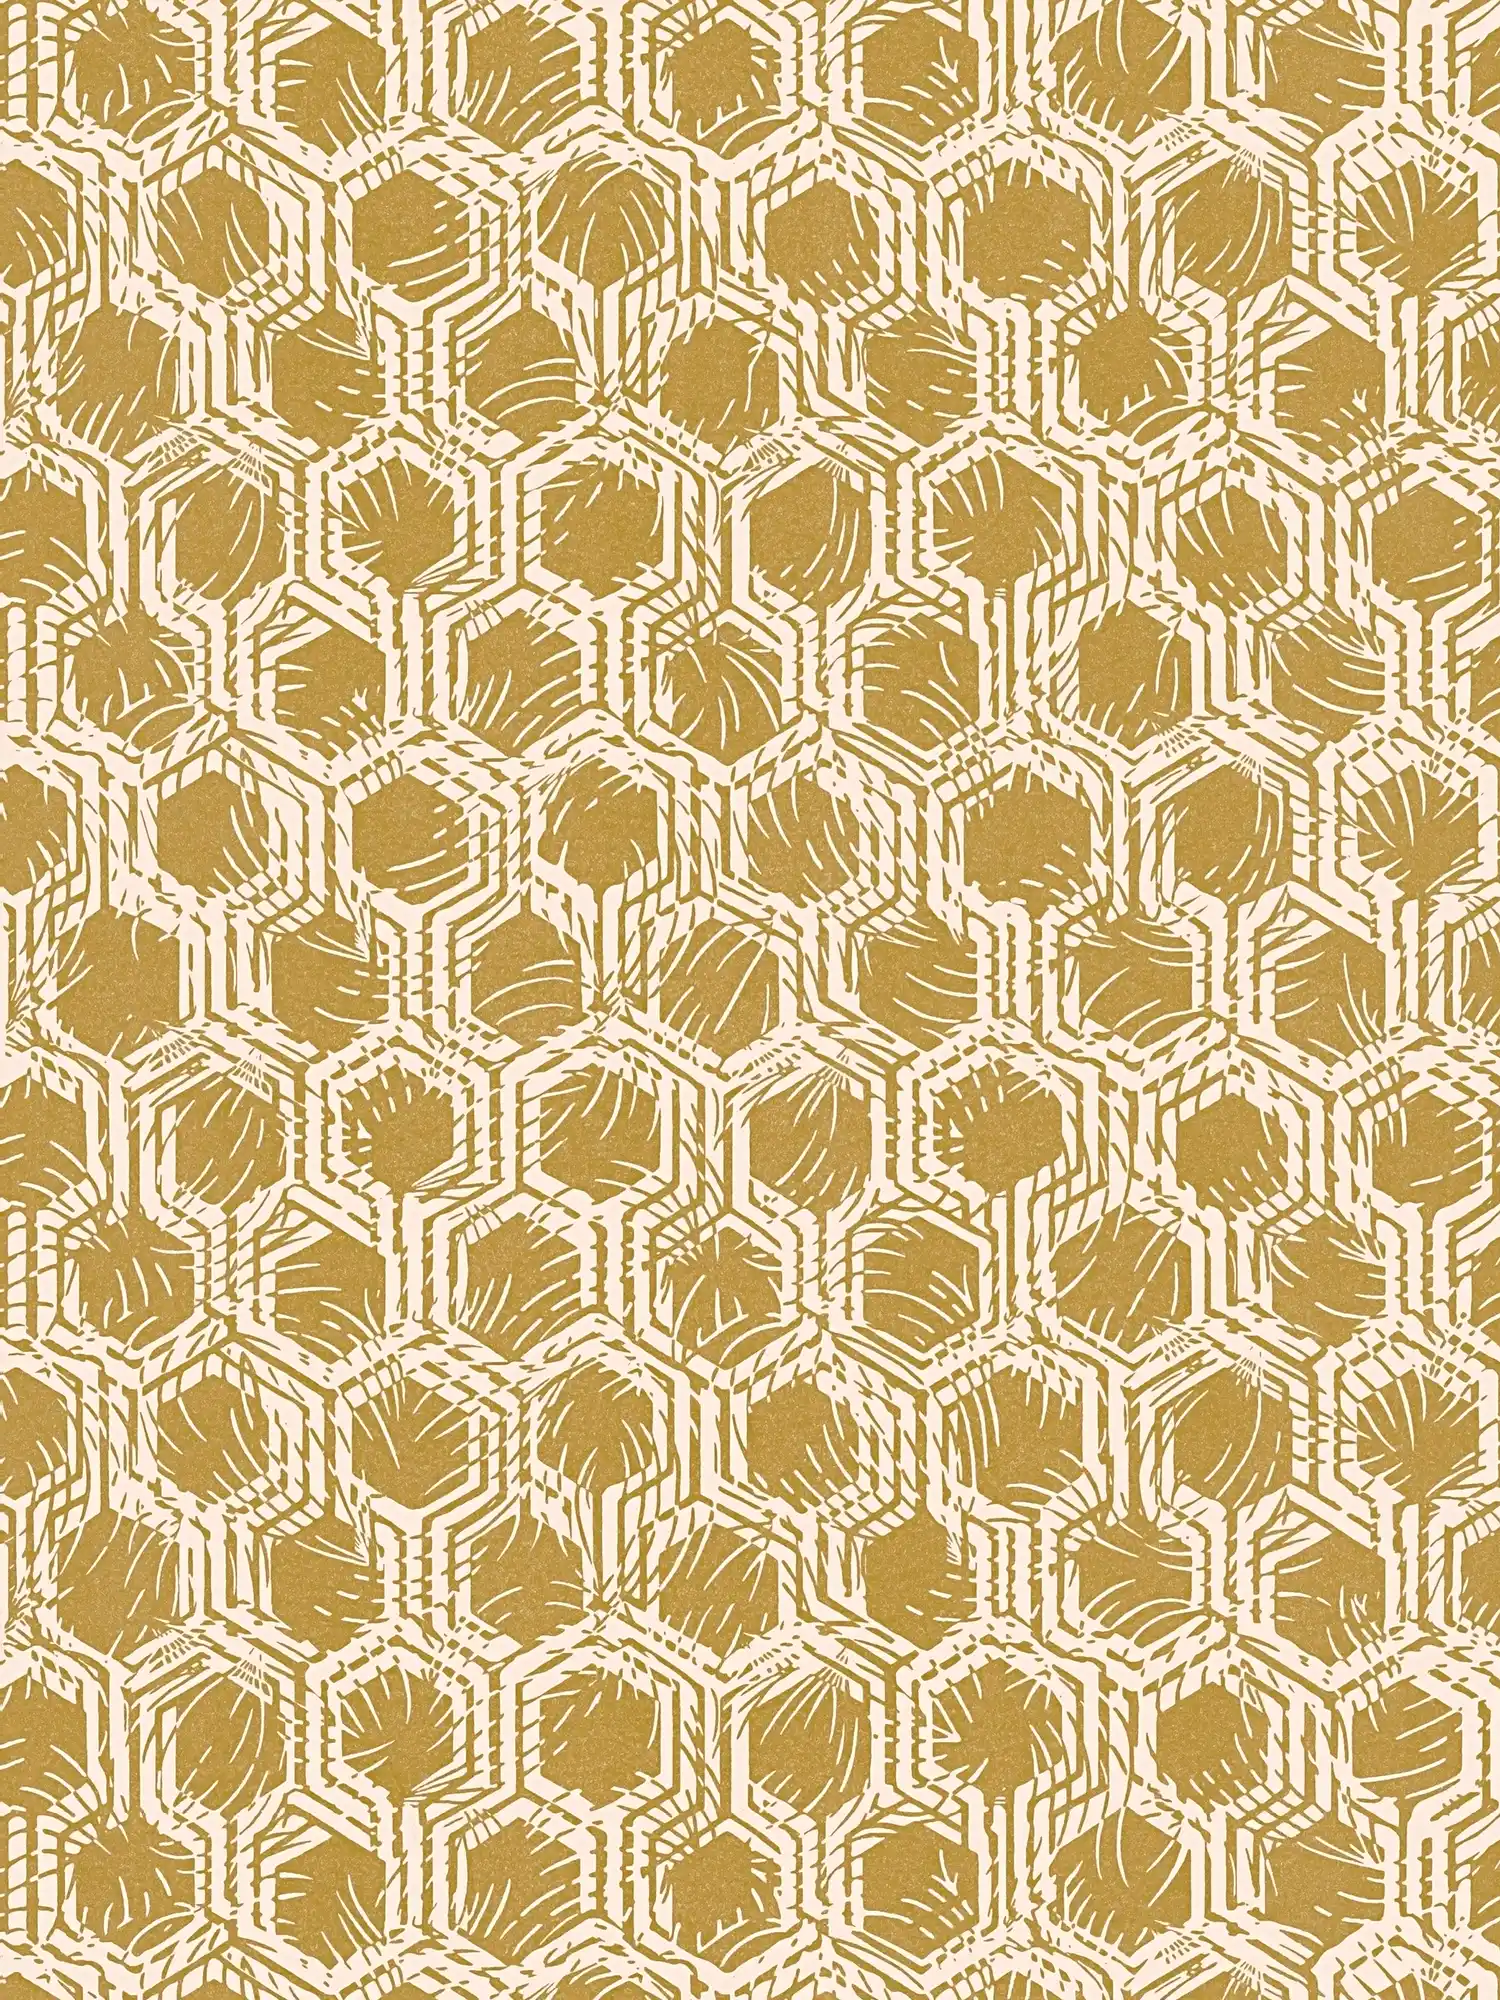 papier peint en papier métallique à motifs géométriques - or, beige
